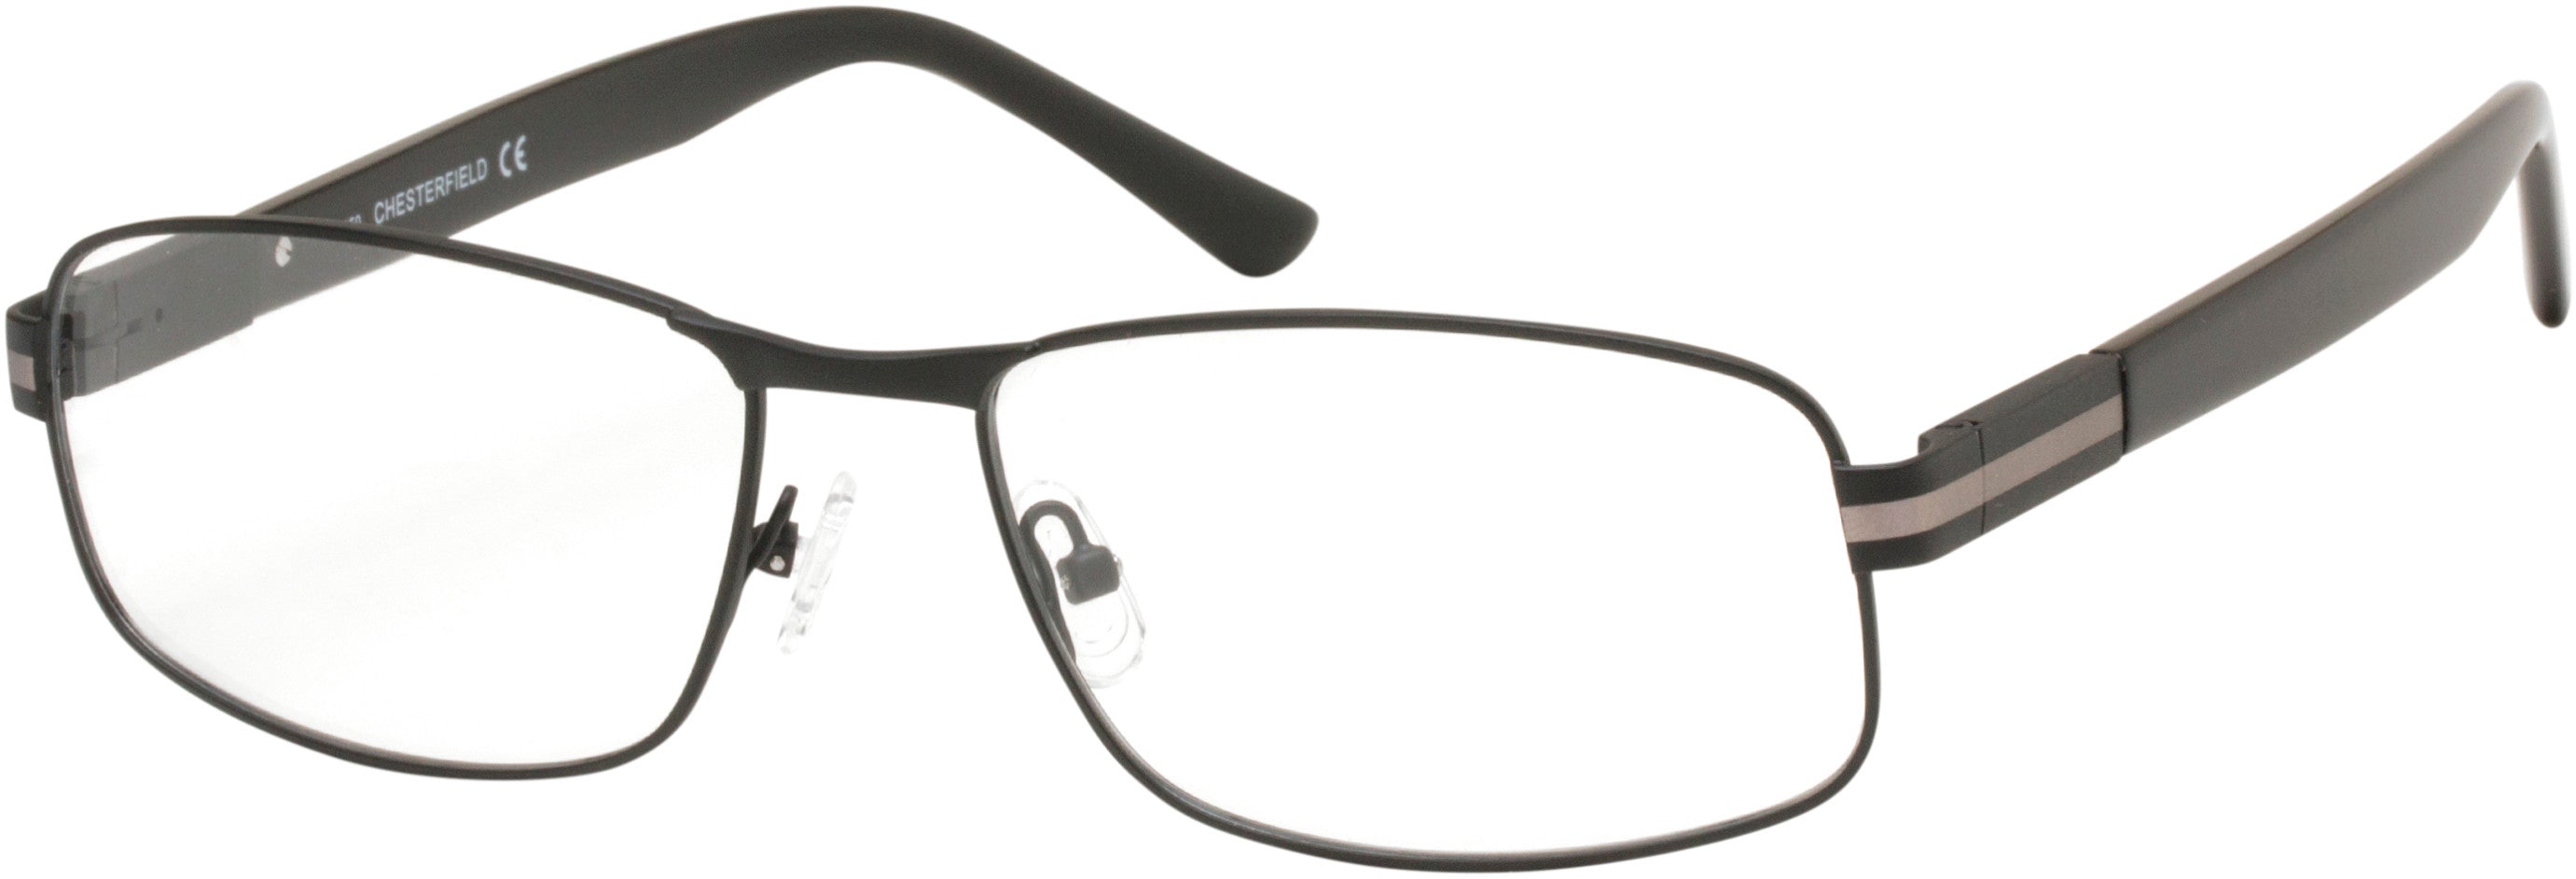  Chesterfield 61XL Rectangular Eyeglasses 0003-0003  Matte Black (00 Demo Lens)